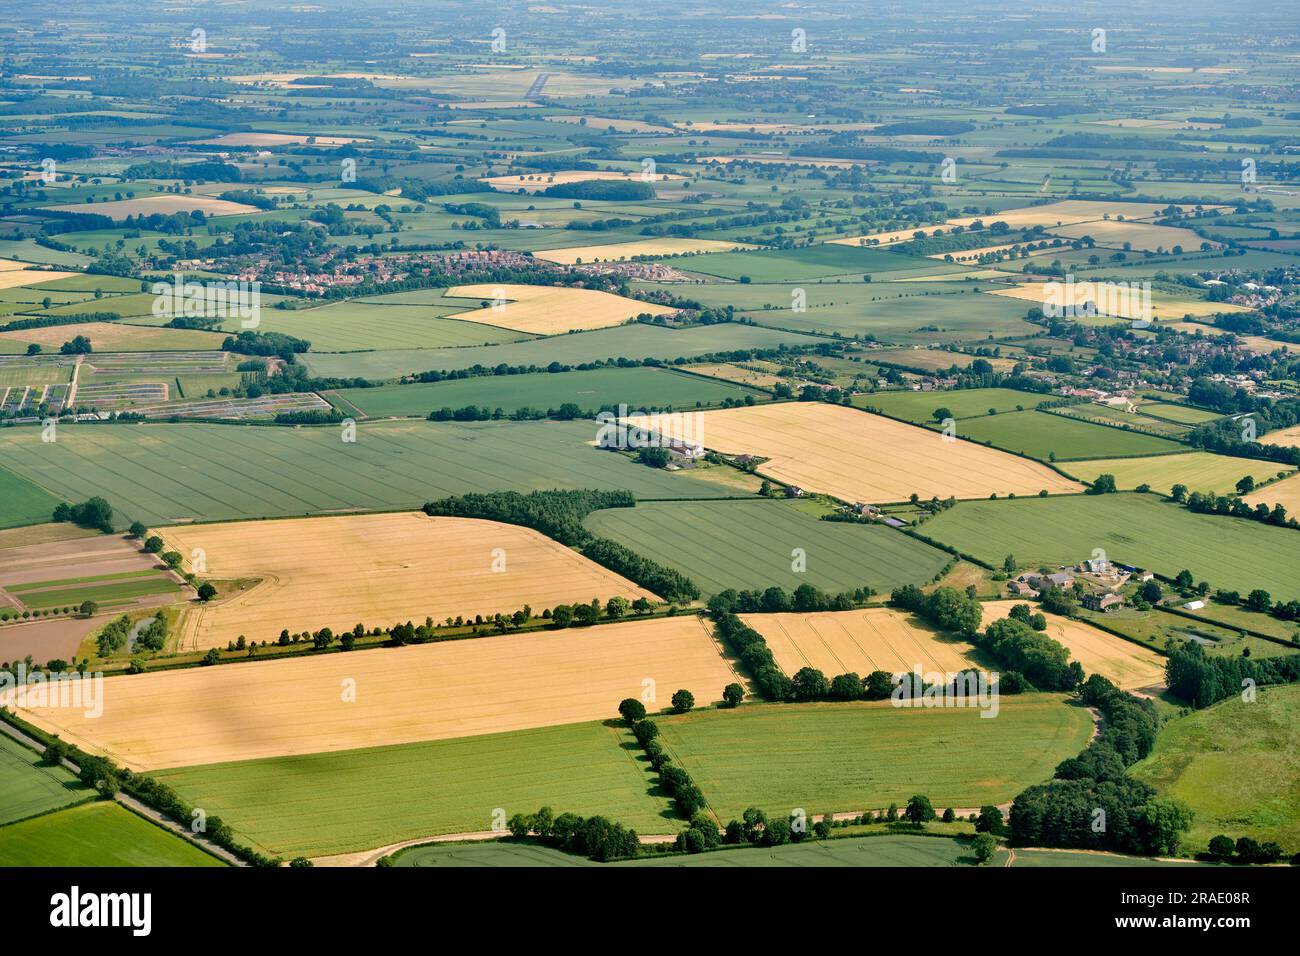 Dans les airs, paysage rural britannique montrant les modèles de champ et les cultures prêtes pour la récolte, North Yorkshire, Northern England, UK Banque D'Images